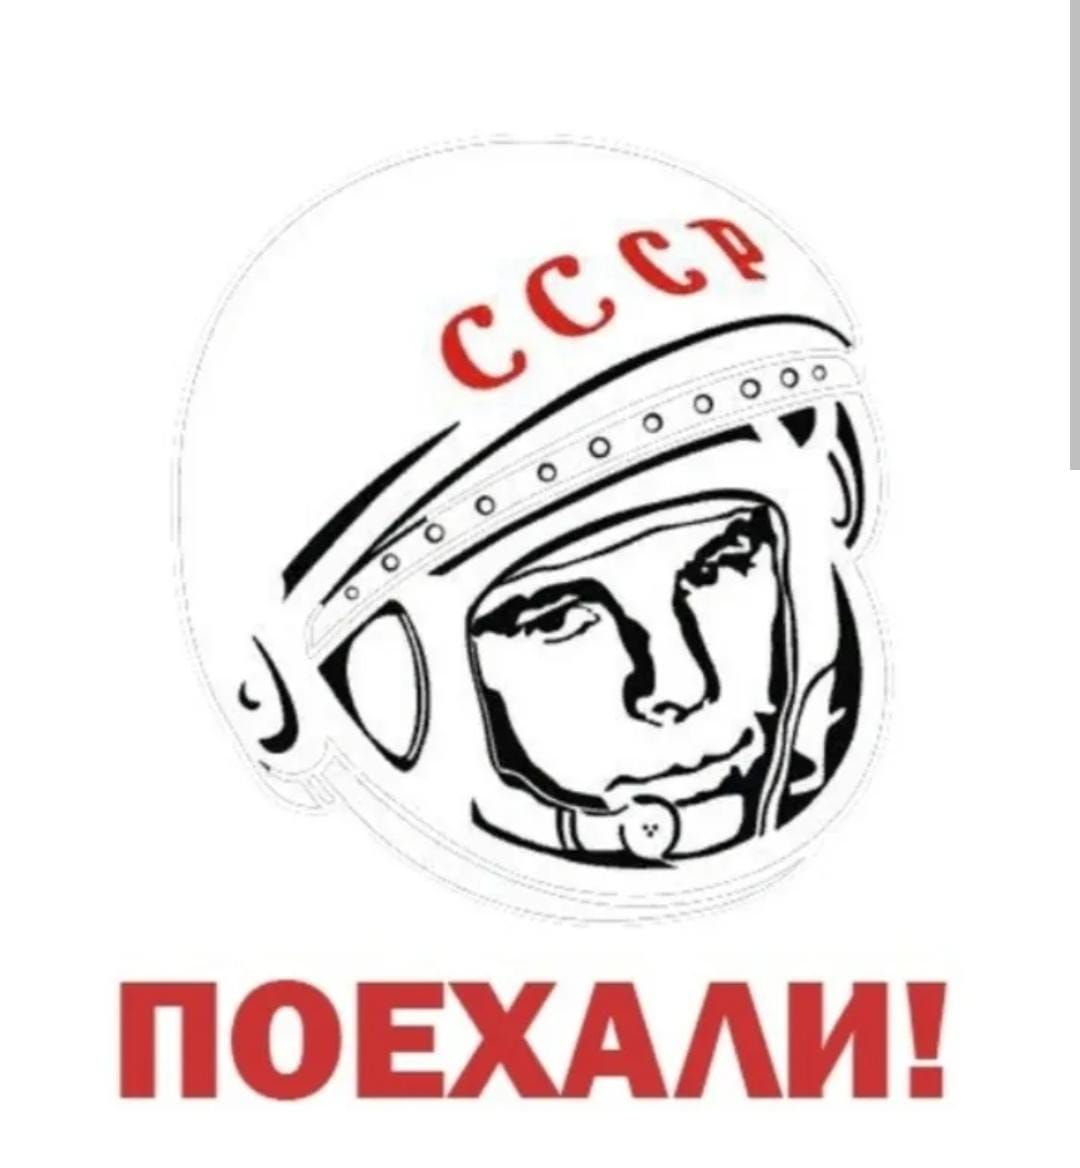 Гагарин говорит поехали. День космонавтики поехали. Гагарин поехали. С днем космонавтики надпись. Поехали надпись.